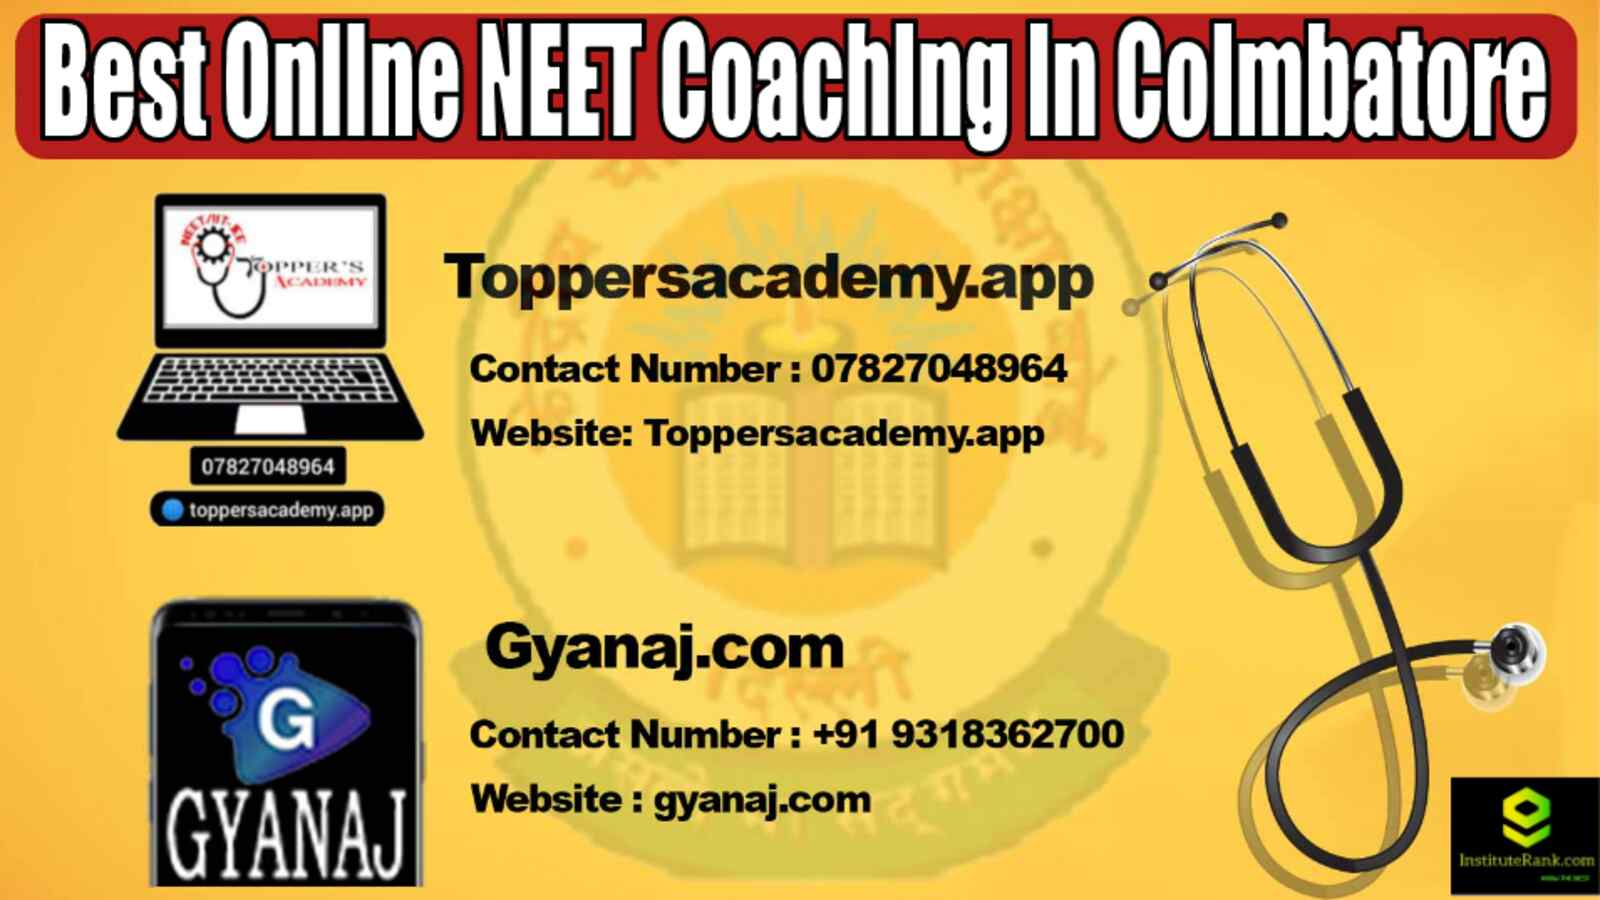 Best Online NEET Coaching in Coimbatore 2022